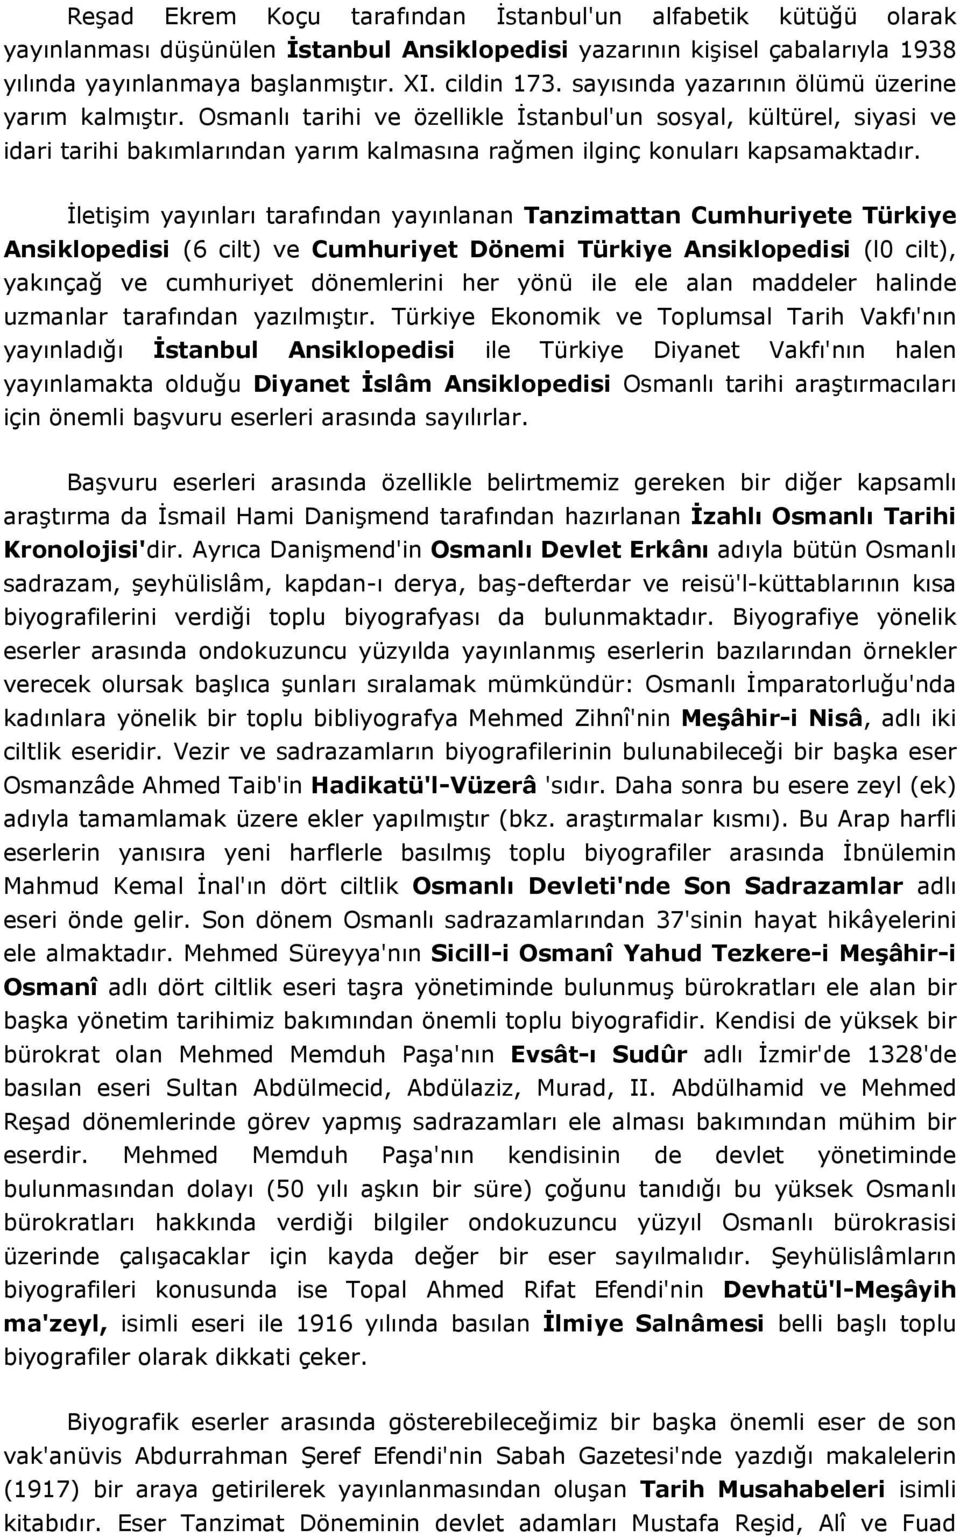 İletişim yayınları tarafından yayınlanan Tanzimattan Cumhuriyete Türkiye Ansiklopedisi (6 cilt) ve Cumhuriyet Dönemi Türkiye Ansiklopedisi (l0 cilt), yakınçağ ve cumhuriyet dönemlerini her yönü ile